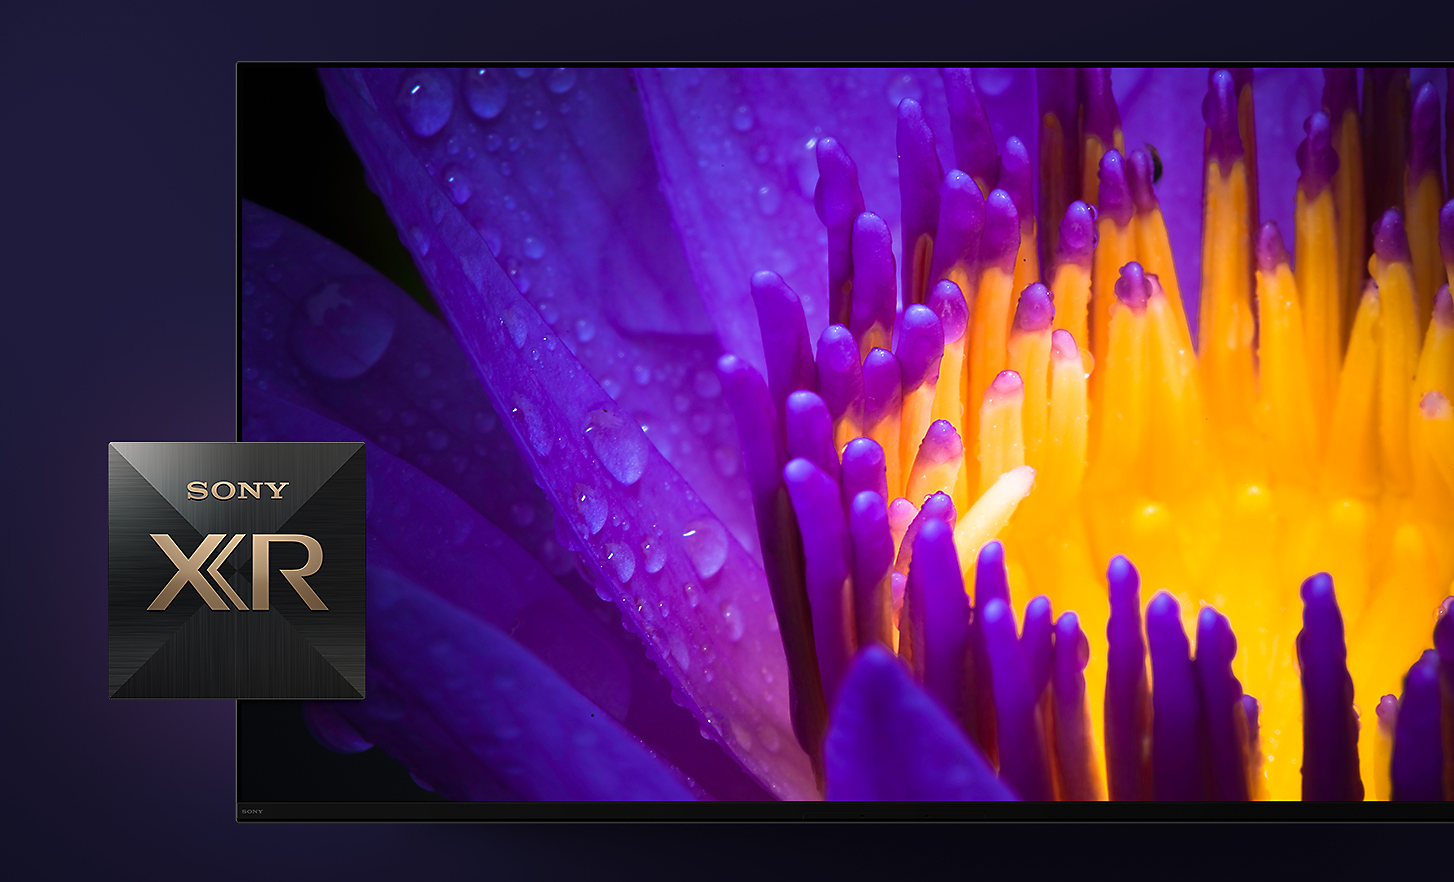 Деталізоване зображення екрана телевізора, на якому показано квітку з жовтими й фіолетовими пелюстками, а на передньому плані – логотип Sony XR